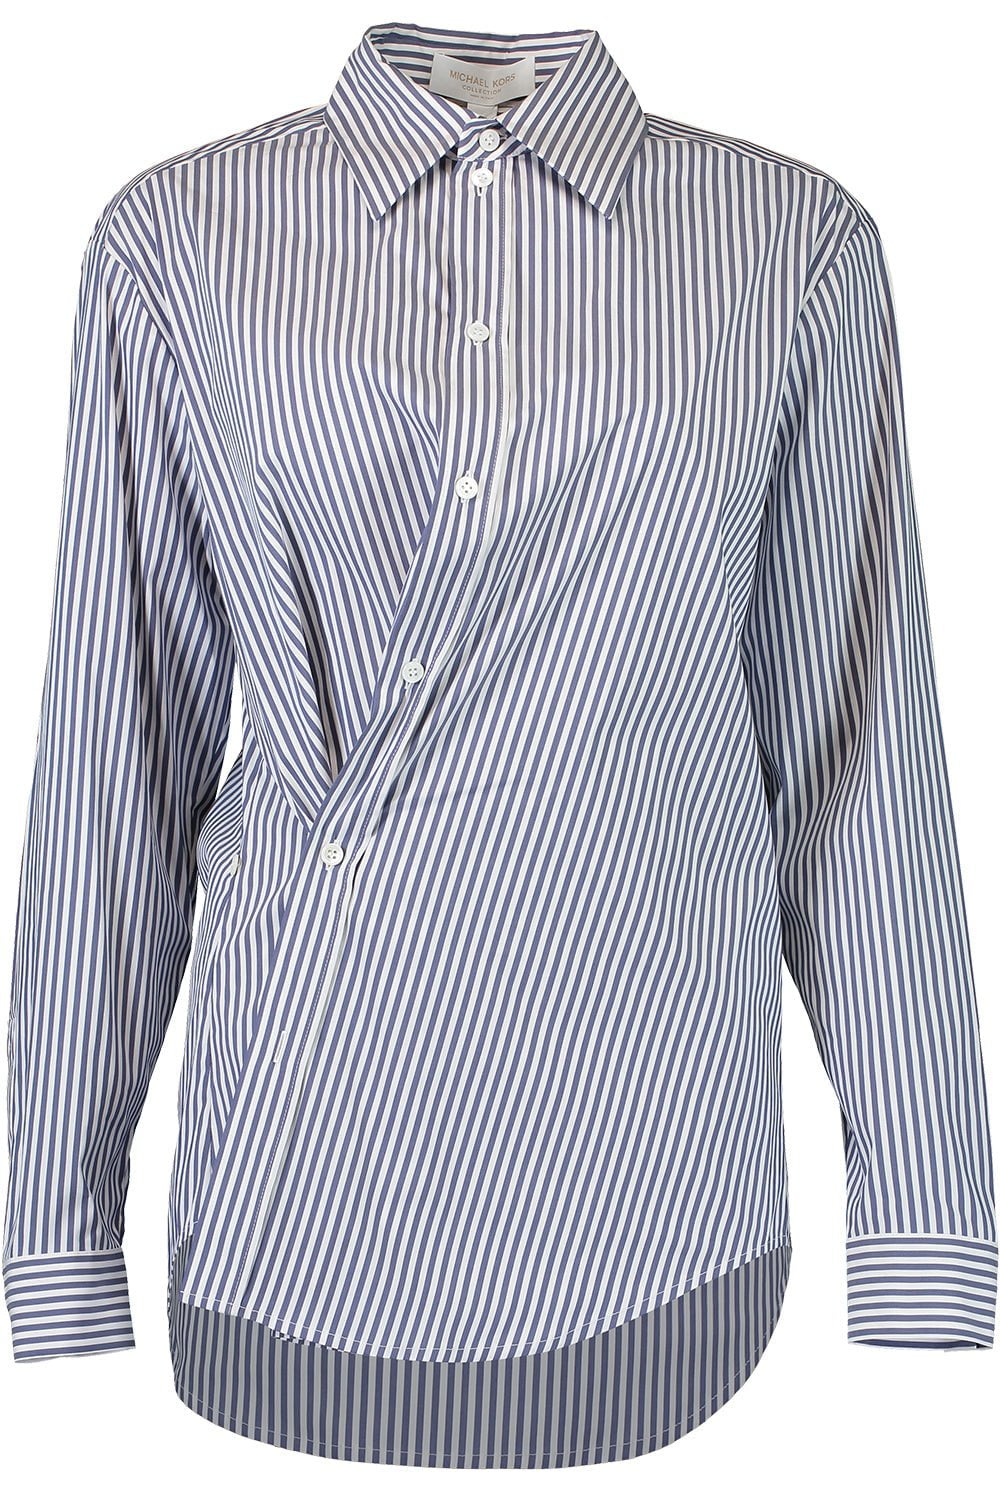 MICHAEL KORS-Side Button Shirt-